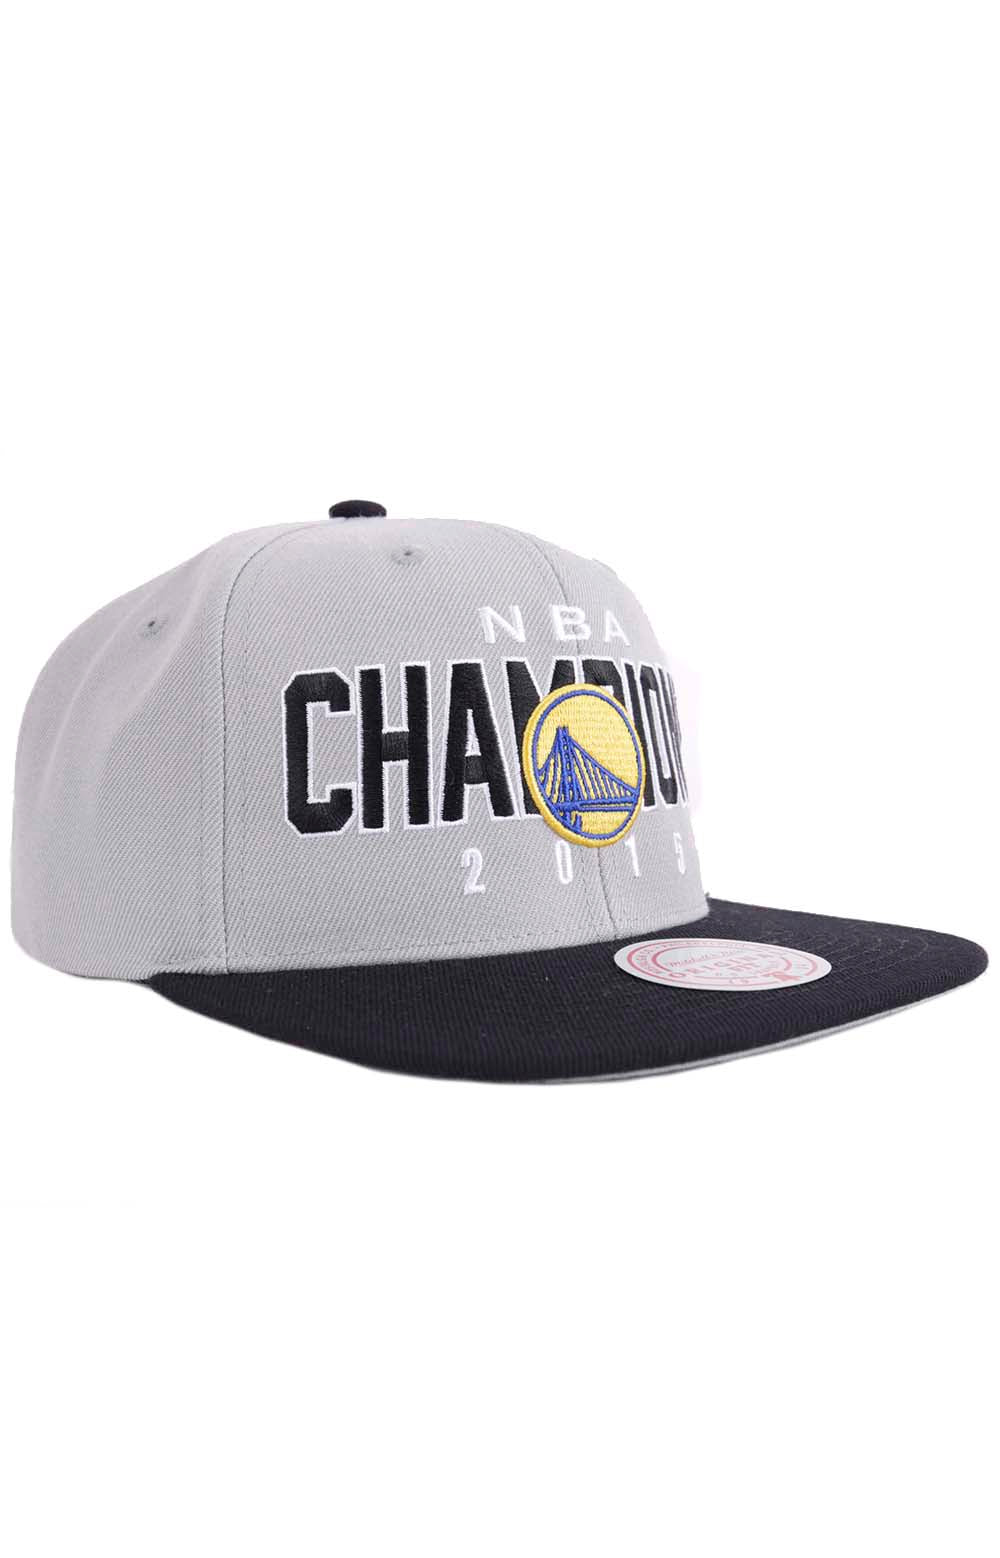 NBA Champs Snap-Back Hat - HWC Warriors